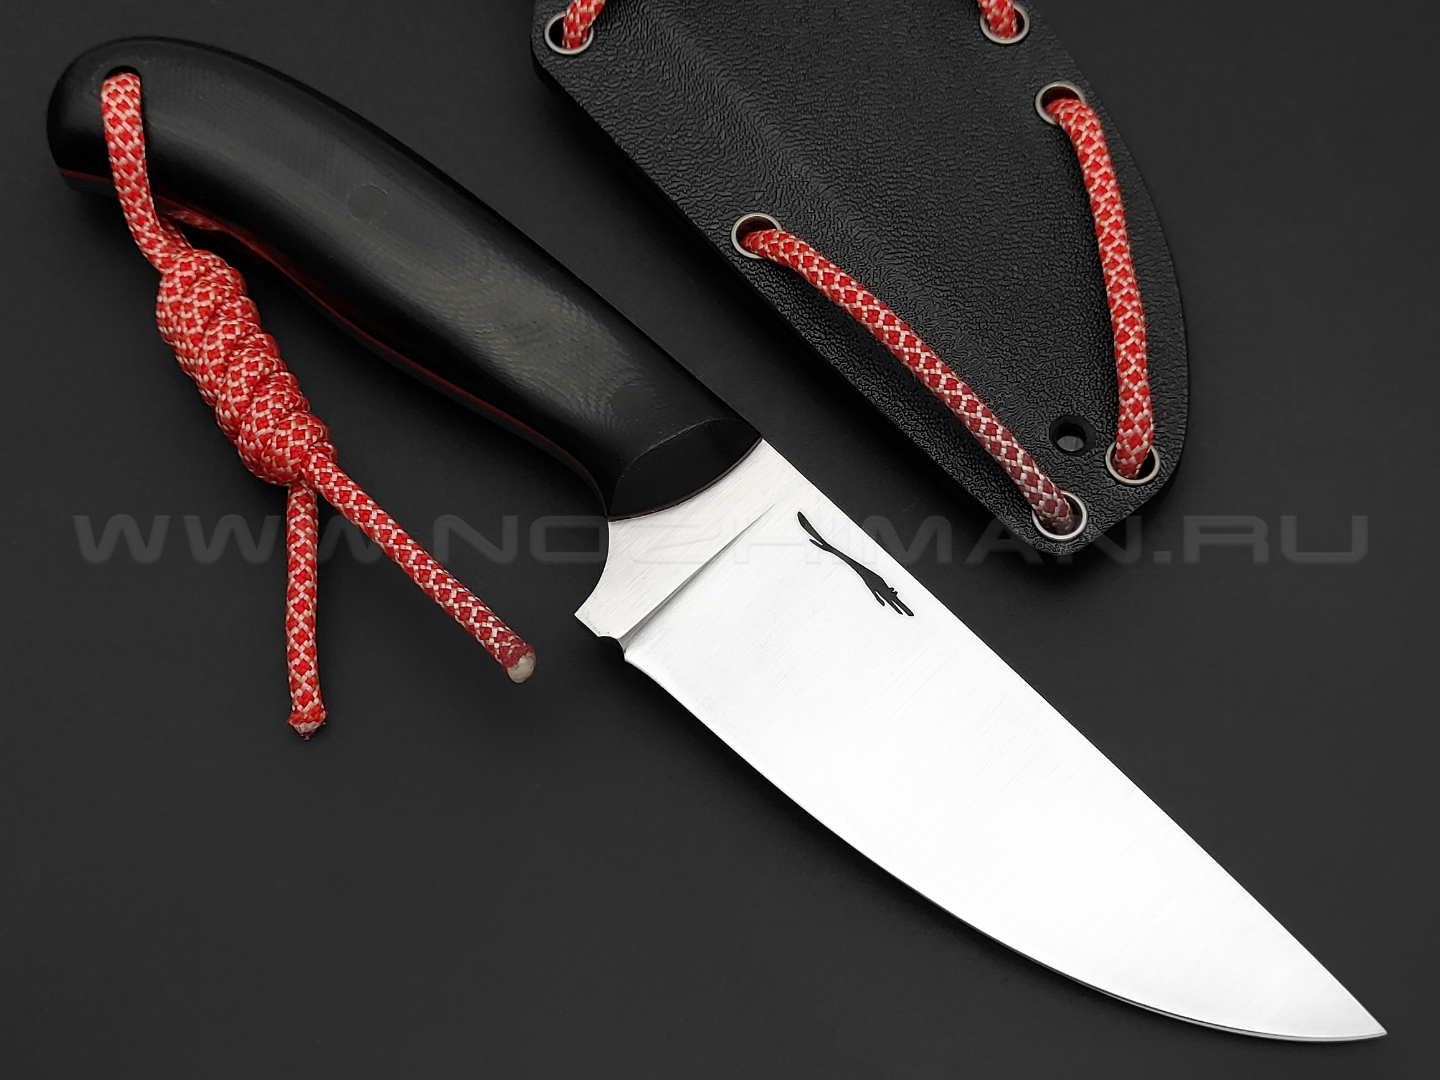 Волчий Век нож Mark-1 сталь N690 WA, сатин, рукоять G10 black